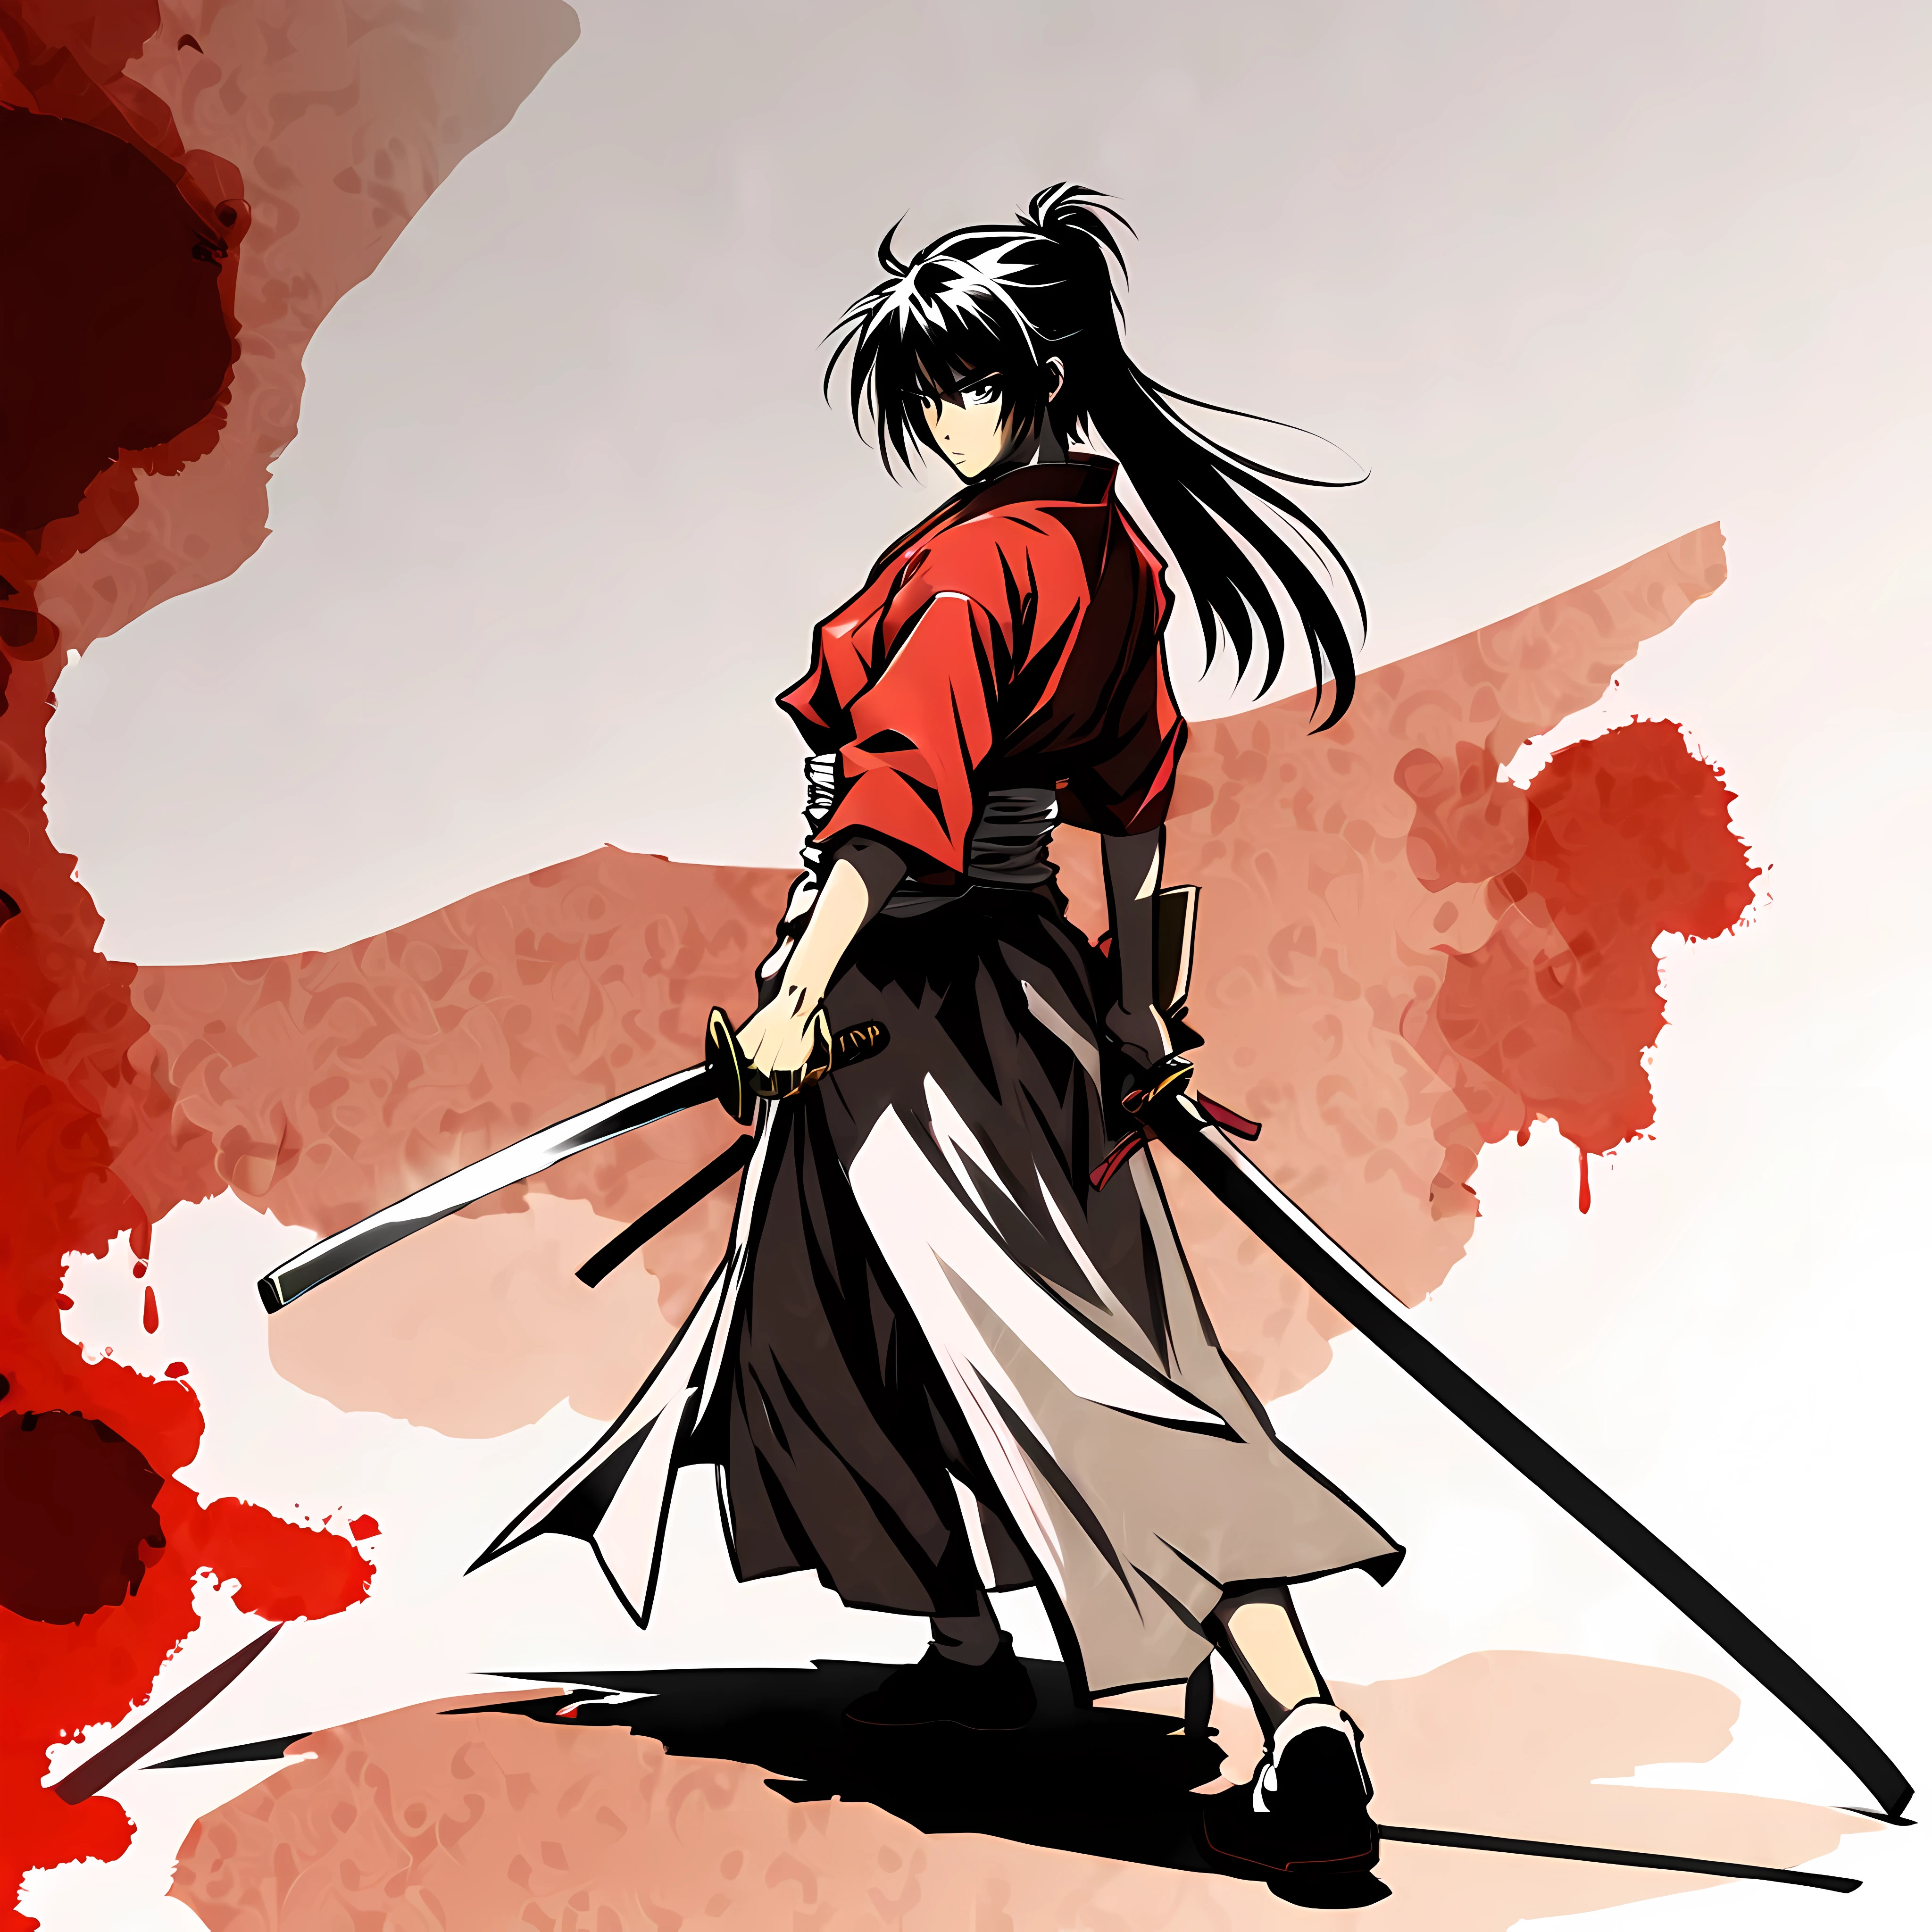 ((Style d&#39;anime Rurouni Kenshin:1.3). ((violent_expression:1.2), ((samouraï femelle):1.2), ((Sablier_chiffre):1.1). ((position de combat):1.1), | The chiffre is depicted with smooth lines, exprimer ses émotions et sa posture à travers le contraste de la densité de l&#39;encre. Le fond est minimaliste, accentuer la lumière, Ombre, et perception spatiale.